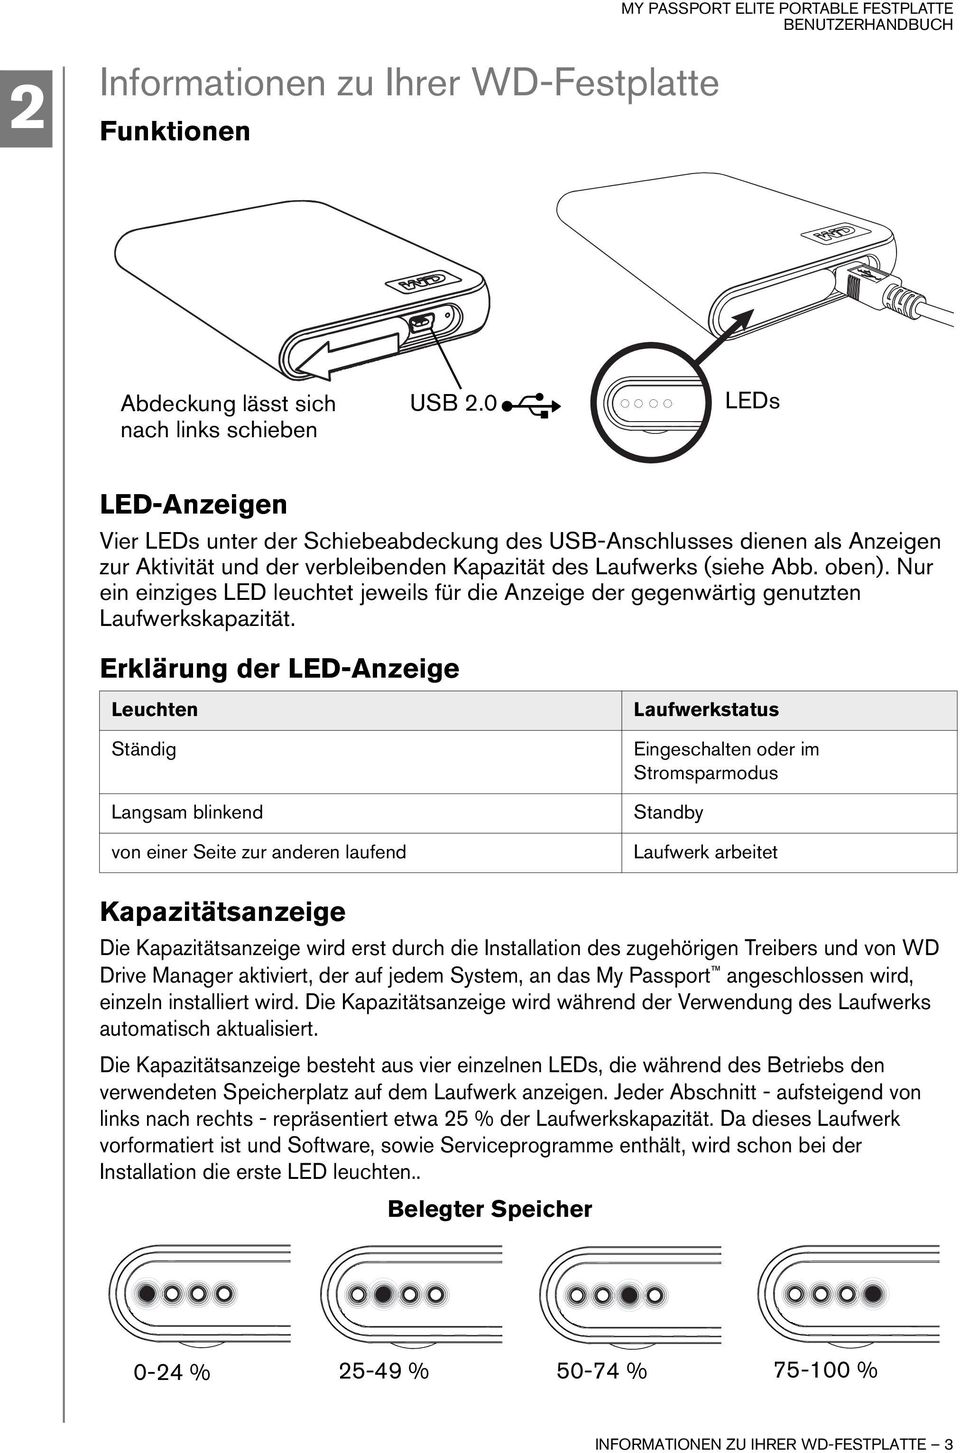 Nur ein einziges LED leuchtet jeweils für die Anzeige der gegenwärtig genutzten Laufwerkskapazität.